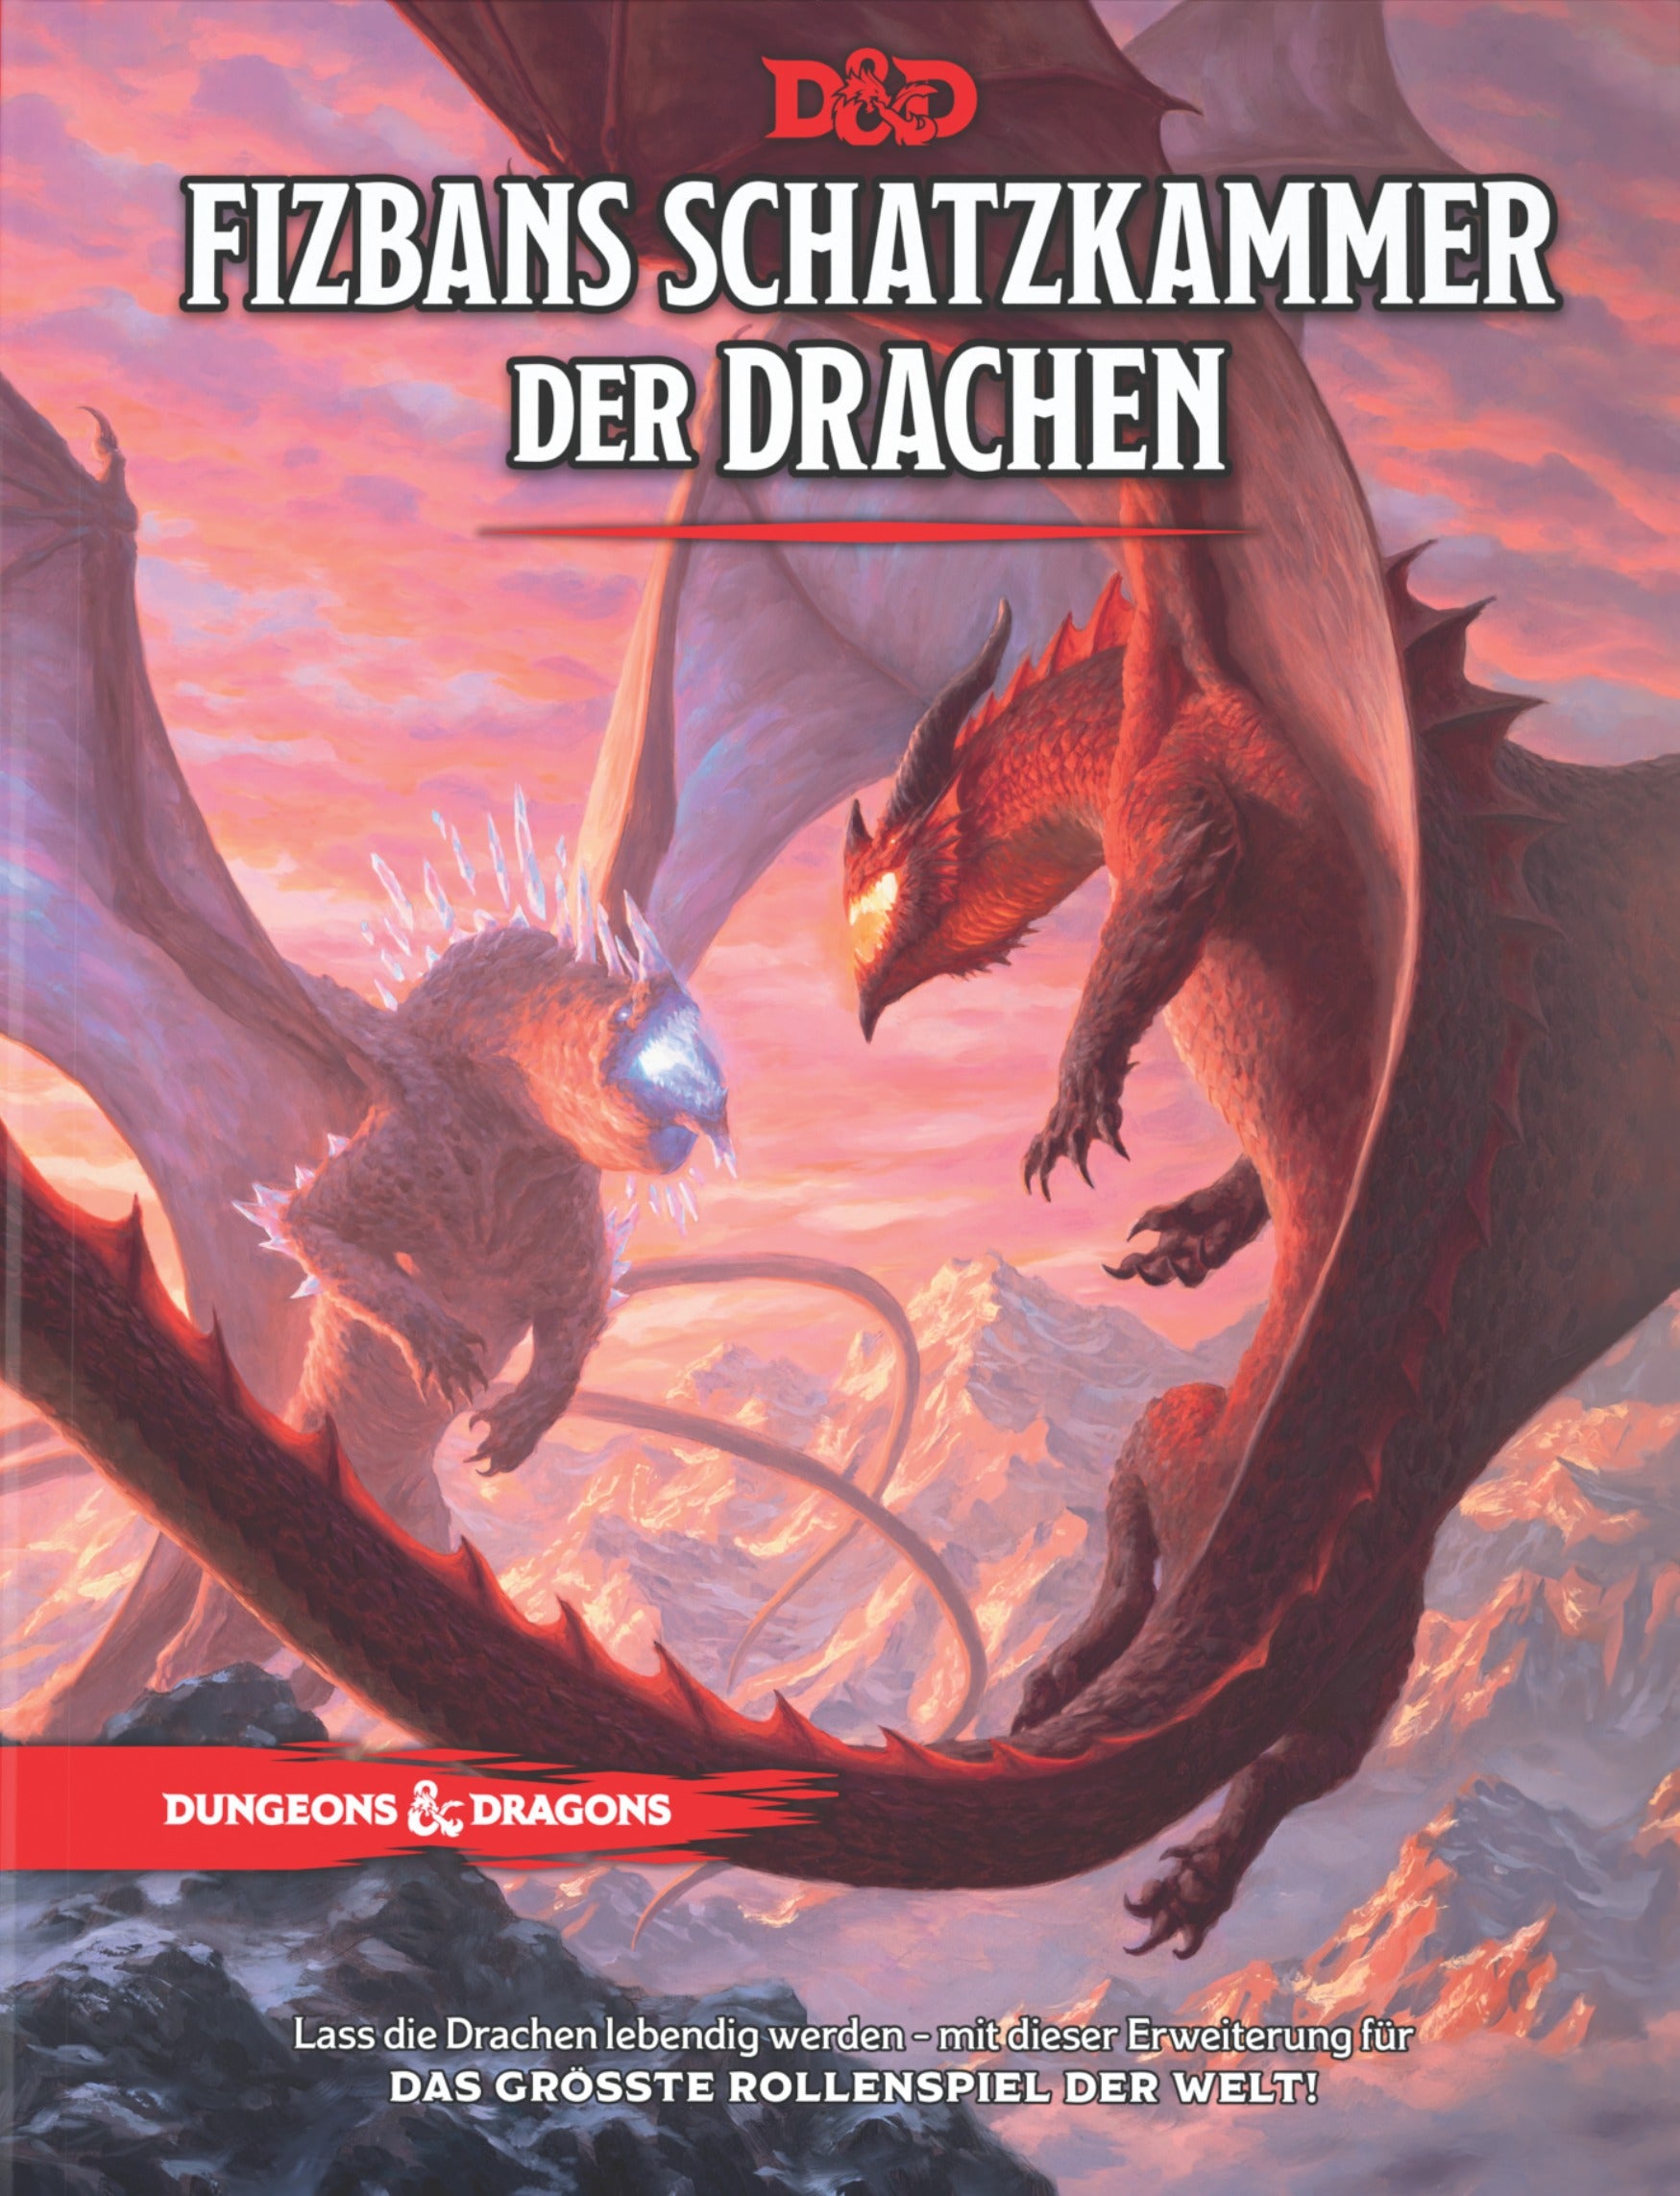 Dungeons & Dragons: Fizbans Schatzkammer der Drachen